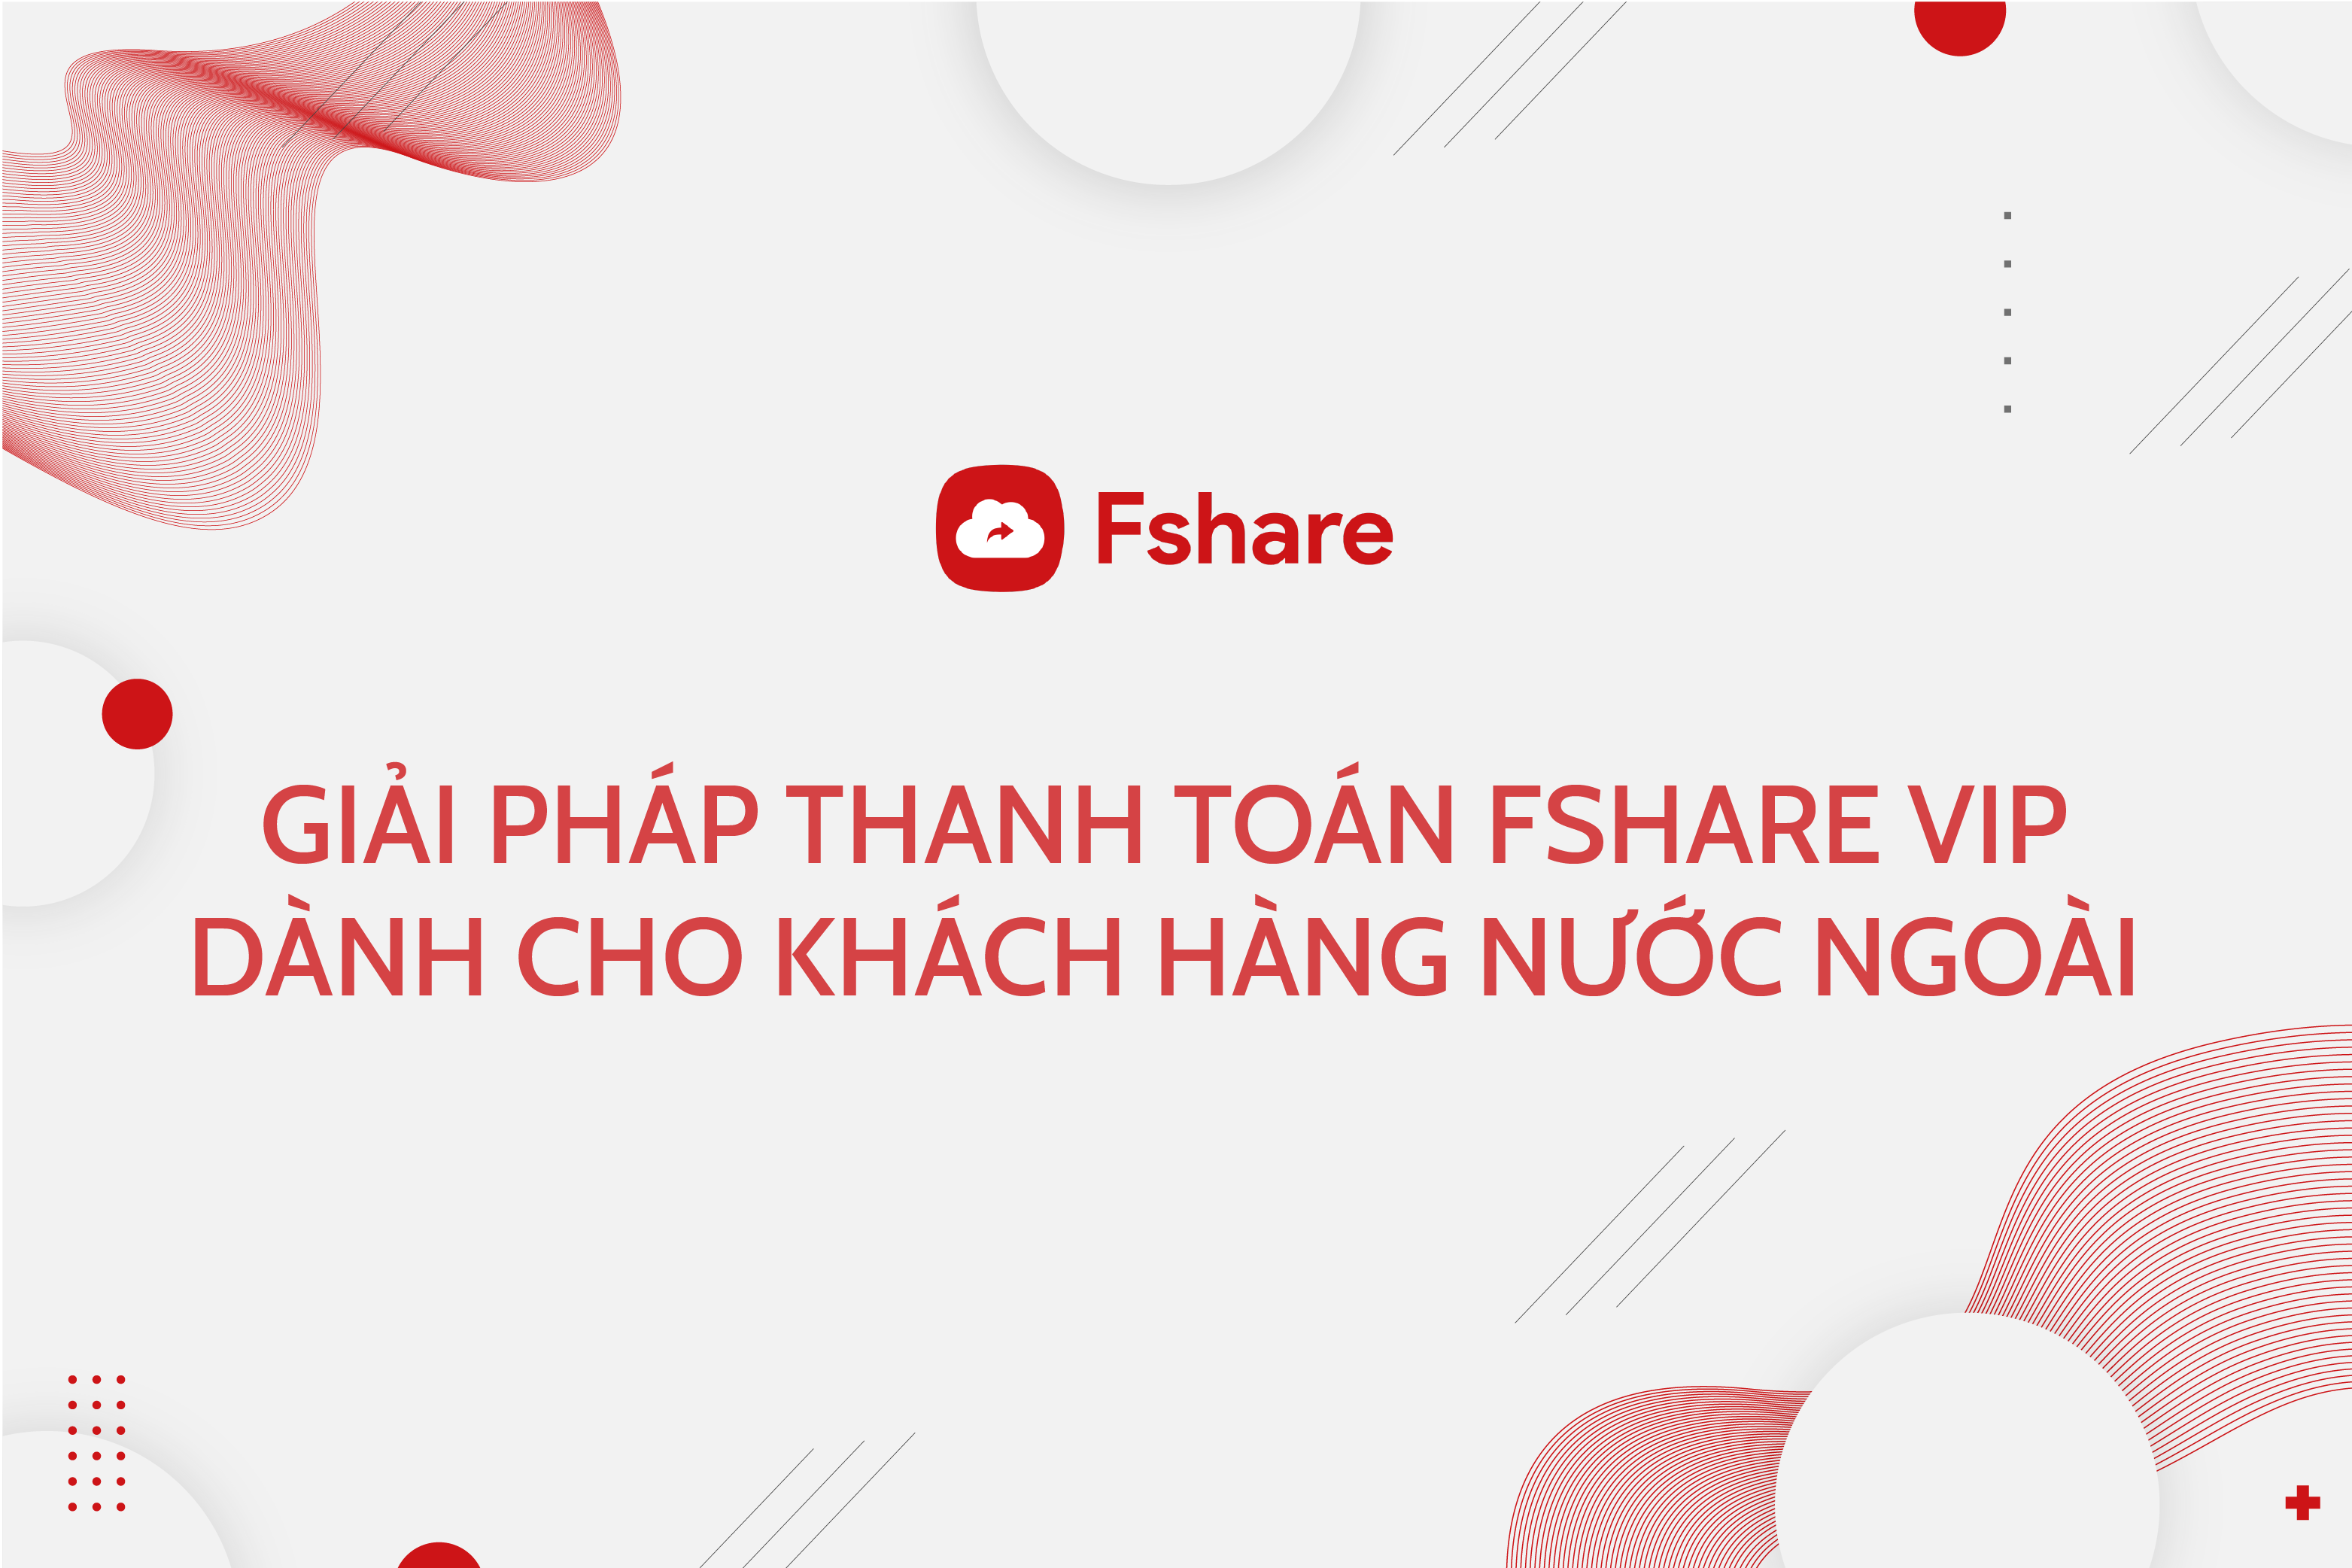 Giải pháp thanh toán Fshare VIP dành cho khách hàng nước ngoài